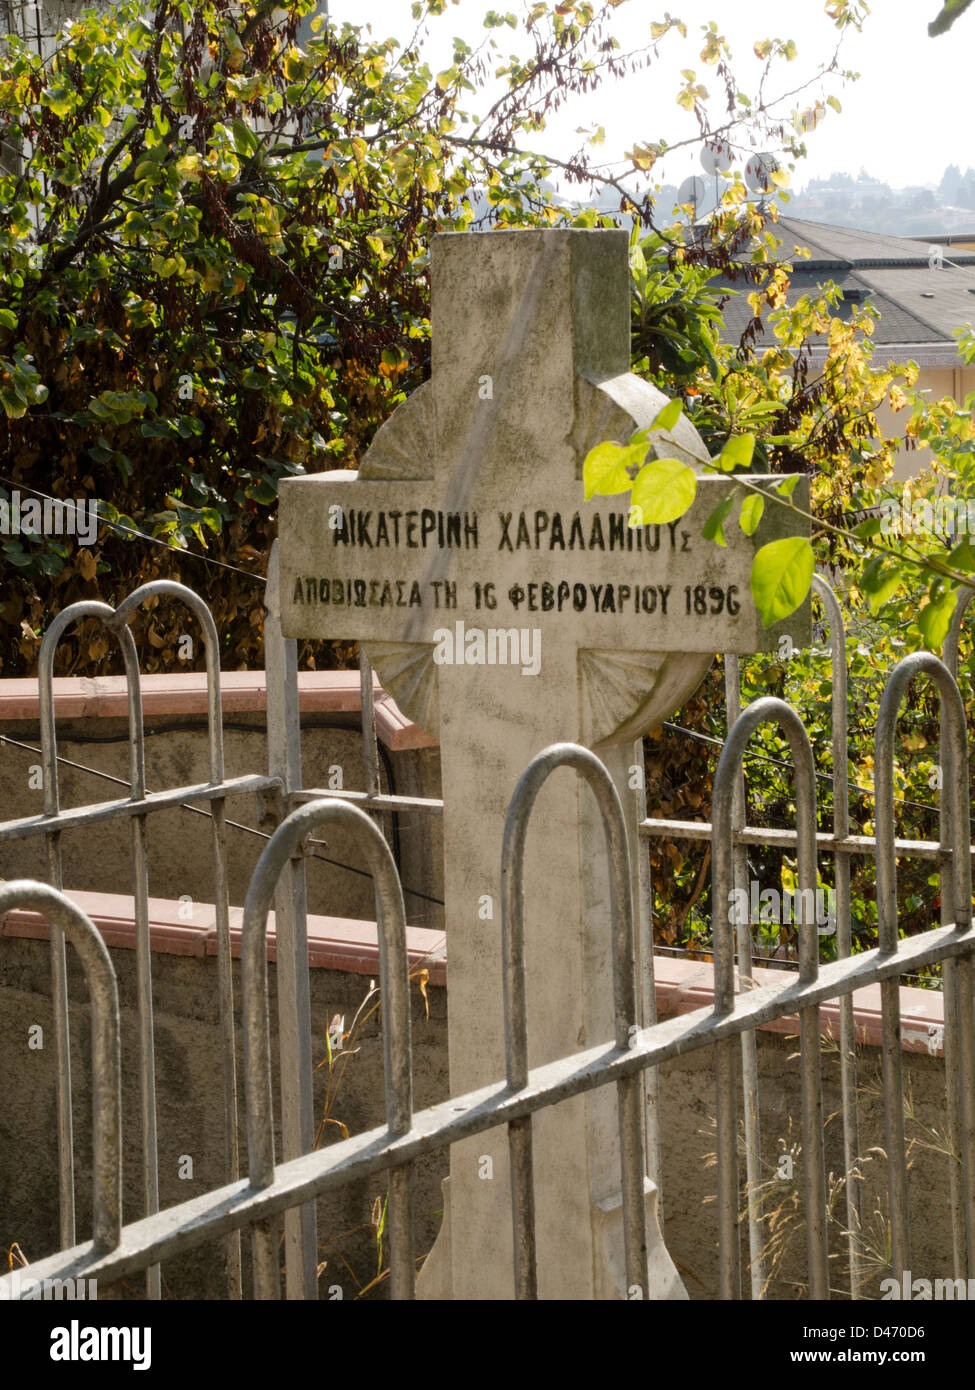 Törkei, Istanbul, Cengelköy, griechisches Grab vor einer Kirche Stock Photo